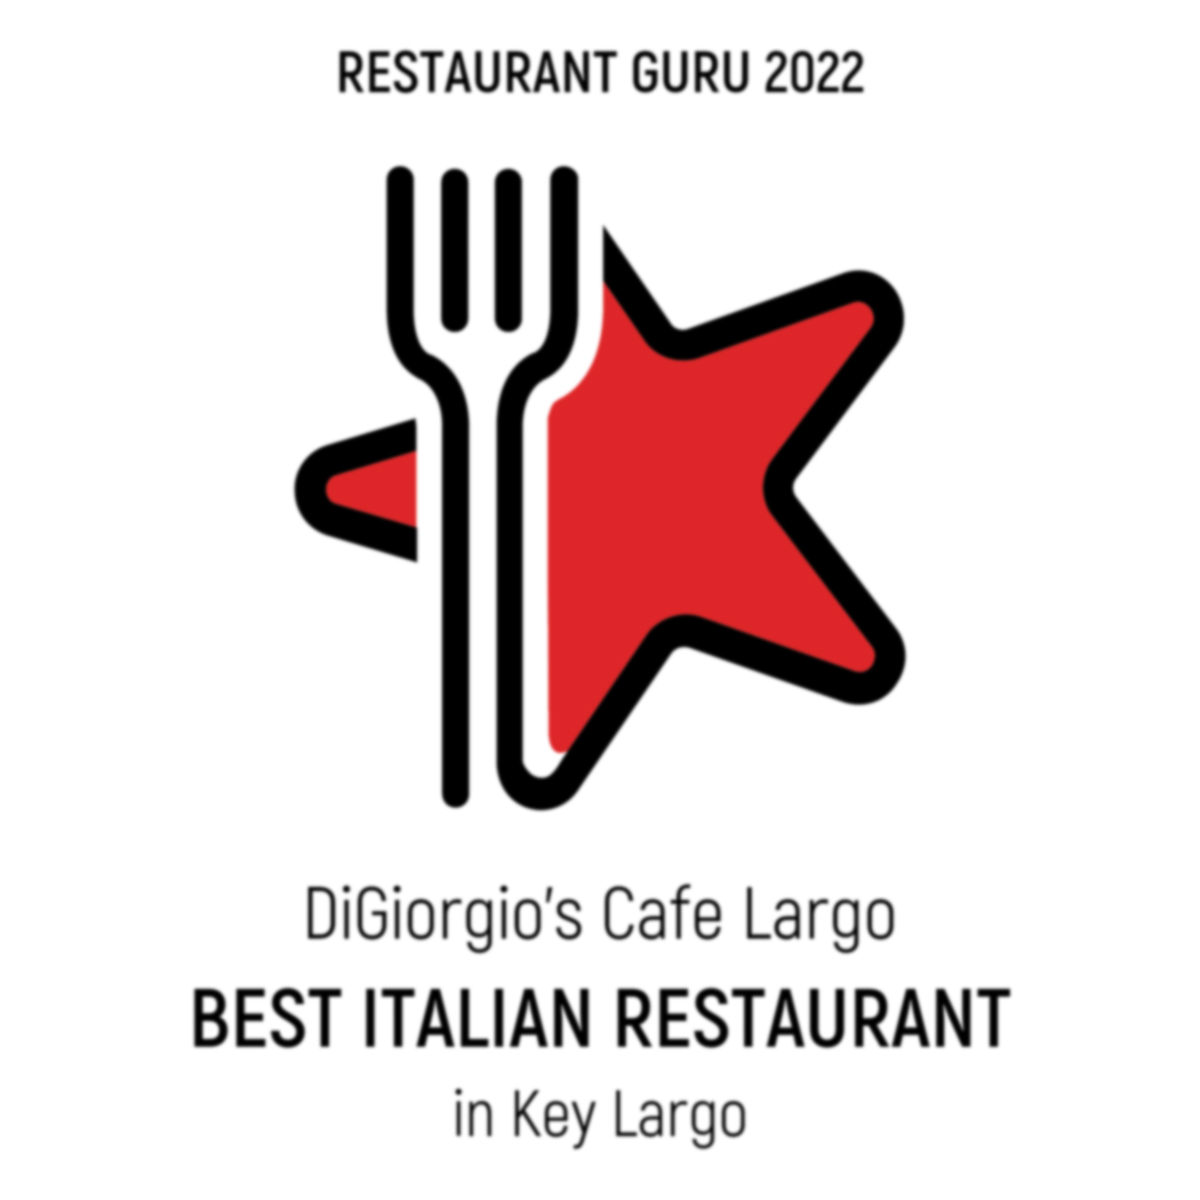 Restaurant Guru Award - Best Italian Restaurant 2022